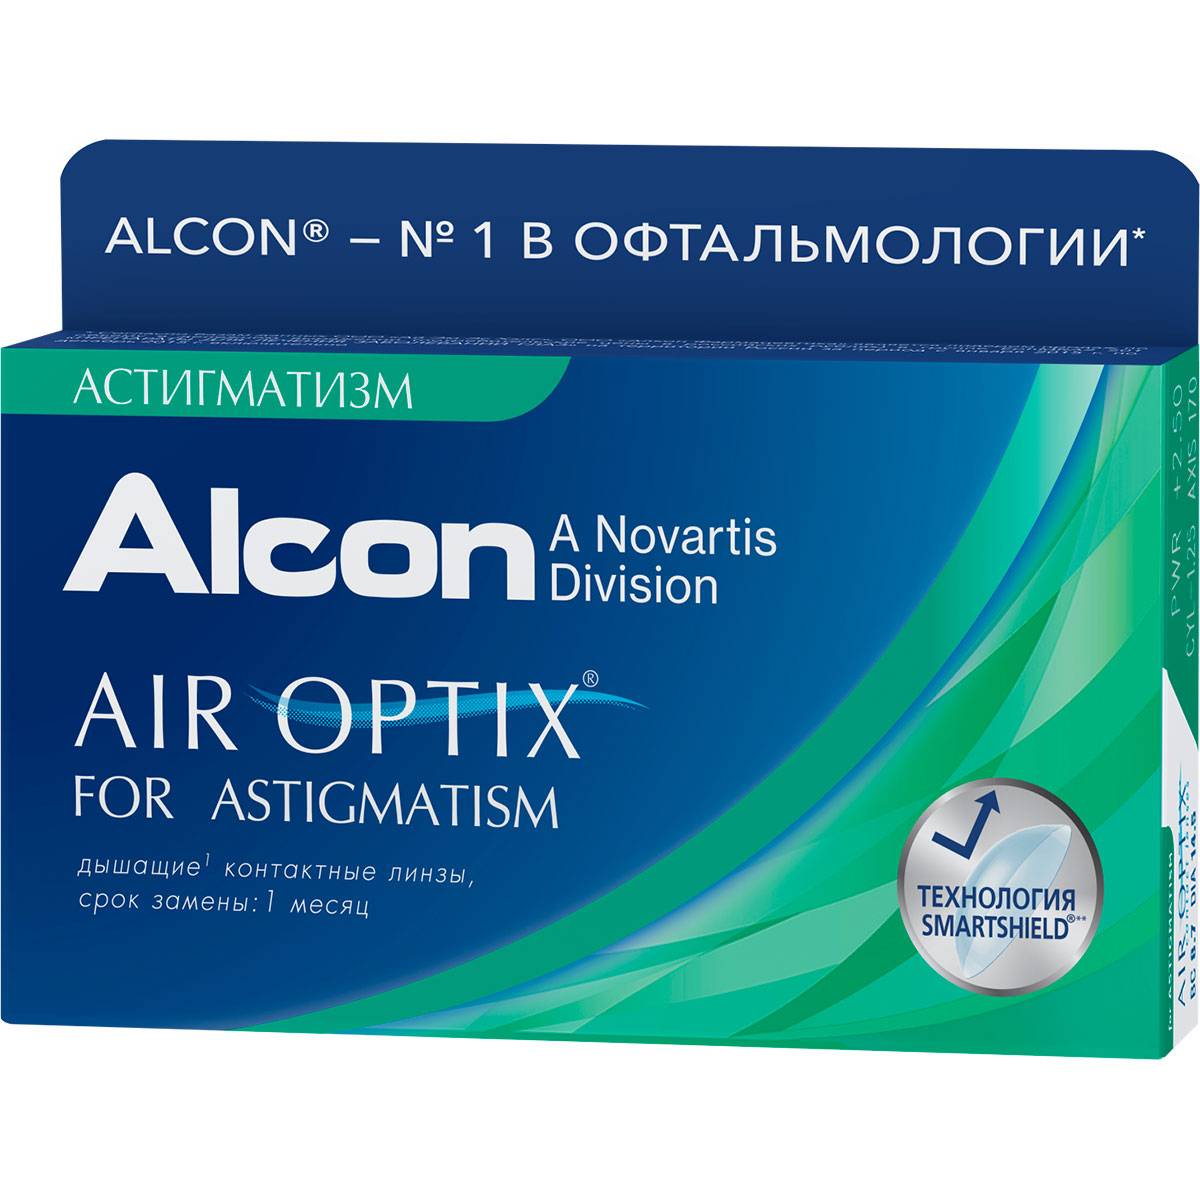 Обзор: контактные линзы air optix и их модели aqua, colors, night day, alcon — что нужно знать для правильного выбора